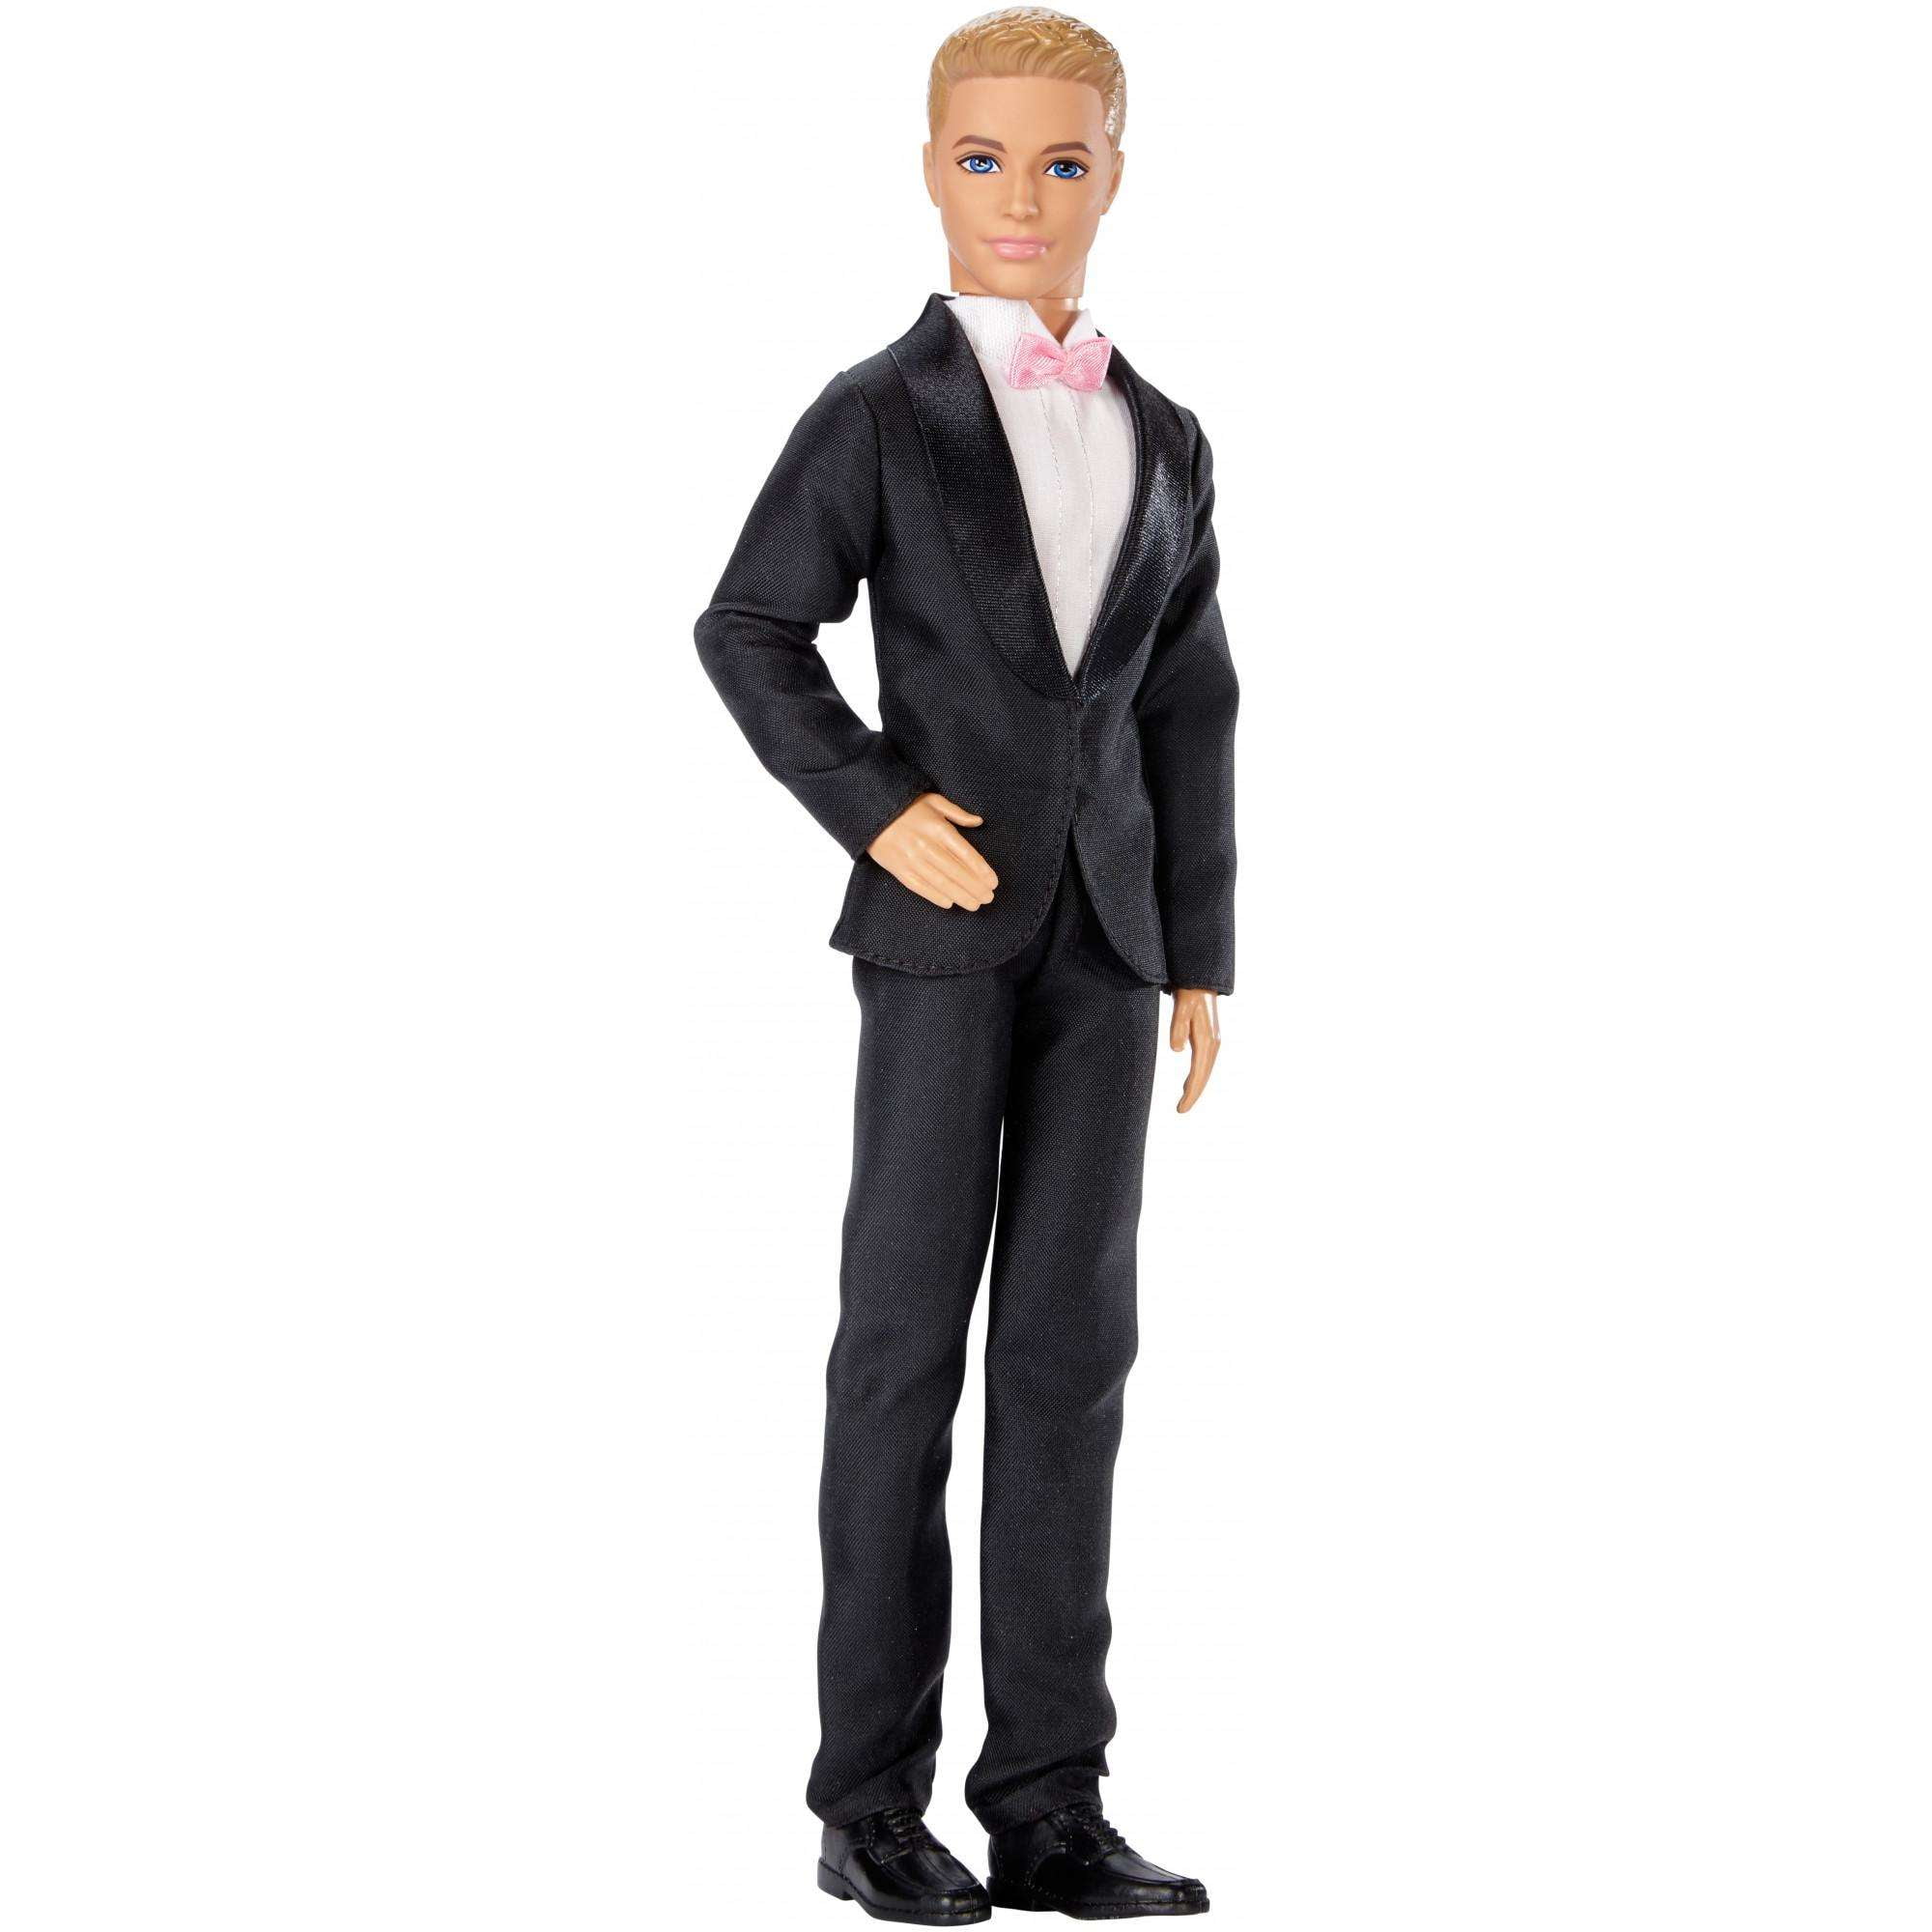 compileren wekelijks deugd Barbie Fairytale Ken Groom Doll In Wedding Tuxedo with Pink Bowtie -  Walmart.com